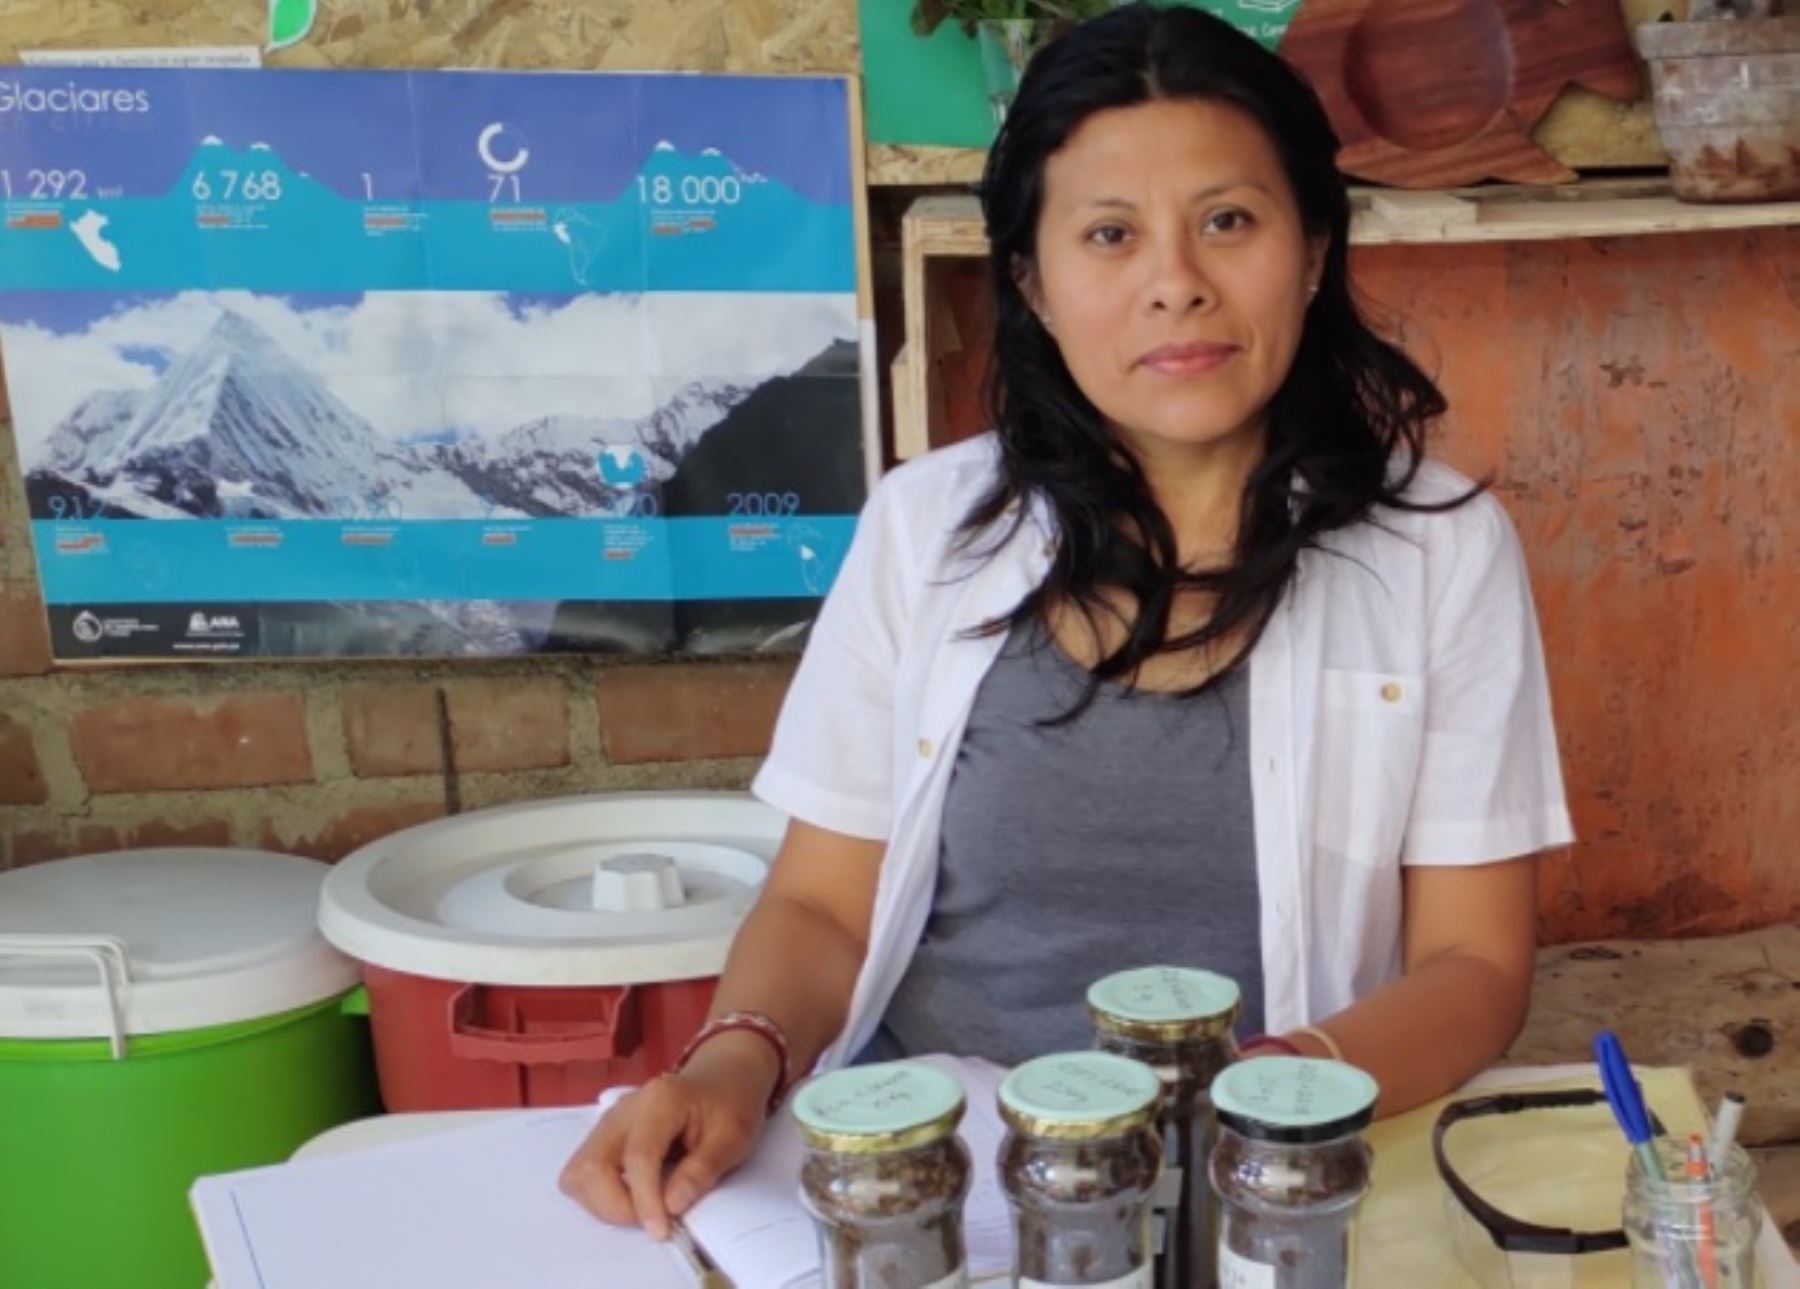 Maribel Zamata Quispe, inventora de dispositivos y un procedimiento para compostaje de residuos orgánicos, que le valieron dos medallas de plata en la Feria Internacional de Invenciones 2020 celebrada en Corea del Sur. Foto: Facebook/Maribel Zamata